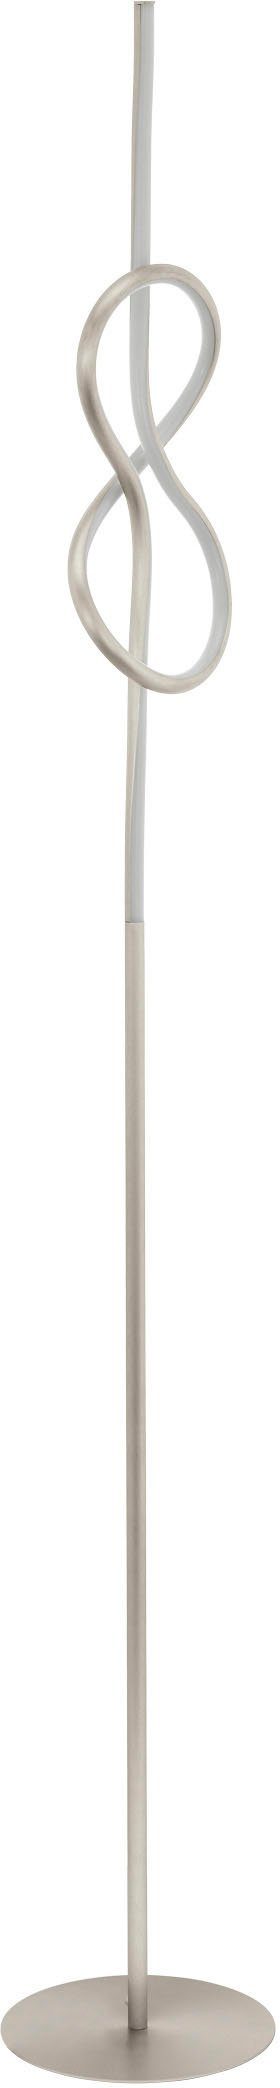 EGLO Stehlampe Tritt-Schalter fest Warmweiß, NOVAFELTRIA, Stehleuchte, und integriert, Weiß, Nickel-Matt LED Lampe mit